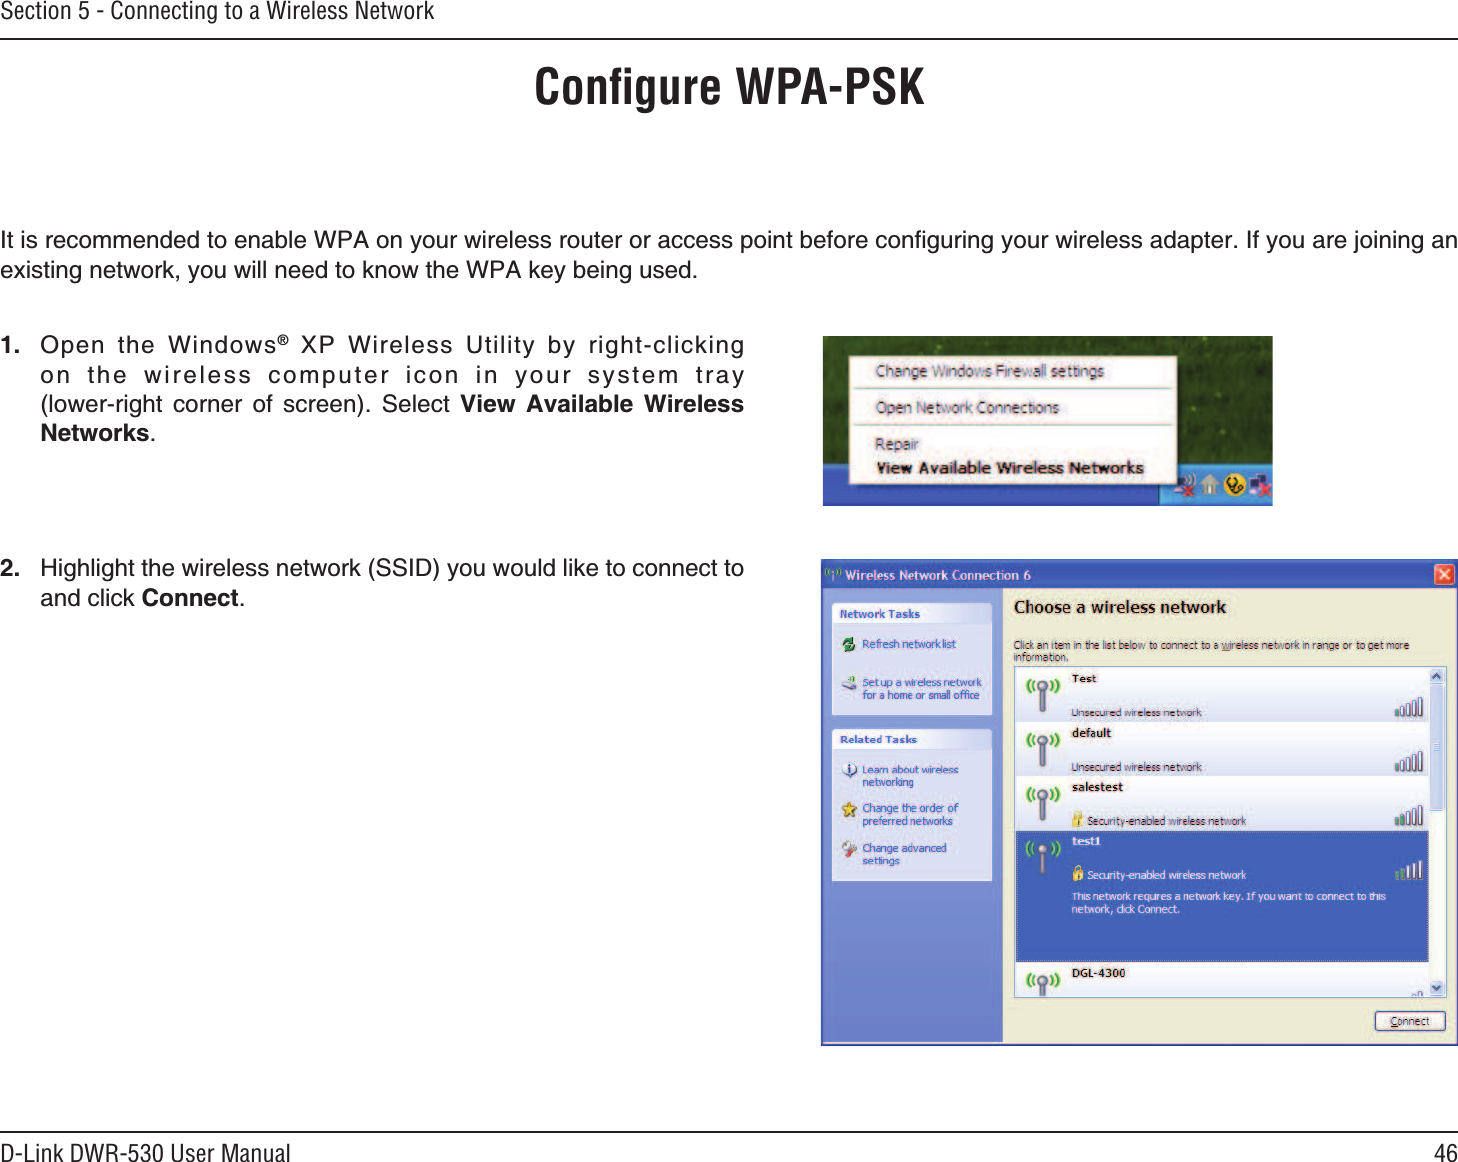 46D-Link DWR-530 User ManualSection 5 - Connecting to a Wireless NetworkConﬁgure WPA-PSK+VKUTGEQOOGPFGFVQGPCDNG92#QP[QWTYKTGNGUUTQWVGTQTCEEGUURQKPVDGHQTGEQPſIWTKPI[QWTYKTGNGUUCFCRVGT+H[QWCTGLQKPKPICPGZKUVKPIPGVYQTM[QWYKNNPGGFVQMPQYVJG92#MG[DGKPIWUGF *KIJNKIJVVJGYKTGNGUUPGVYQTM55+&amp;[QWYQWNFNKMGVQEQPPGEVVQCPFENKEM%QPPGEV 1RGP VJG 9KPFQYUs :2 9KTGNGUU 7VKNKV[ D[ TKIJVENKEMKPIQP V J G YKT GN GUU E Q ORWV GT  KEQP  KP  [QWT  U [UVG O  VTC[NQYGTTKIJV EQTPGT QH UETGGP 5GNGEV 8KGY #XCKNCDNG 9KTGNGUU0GVYQTMU